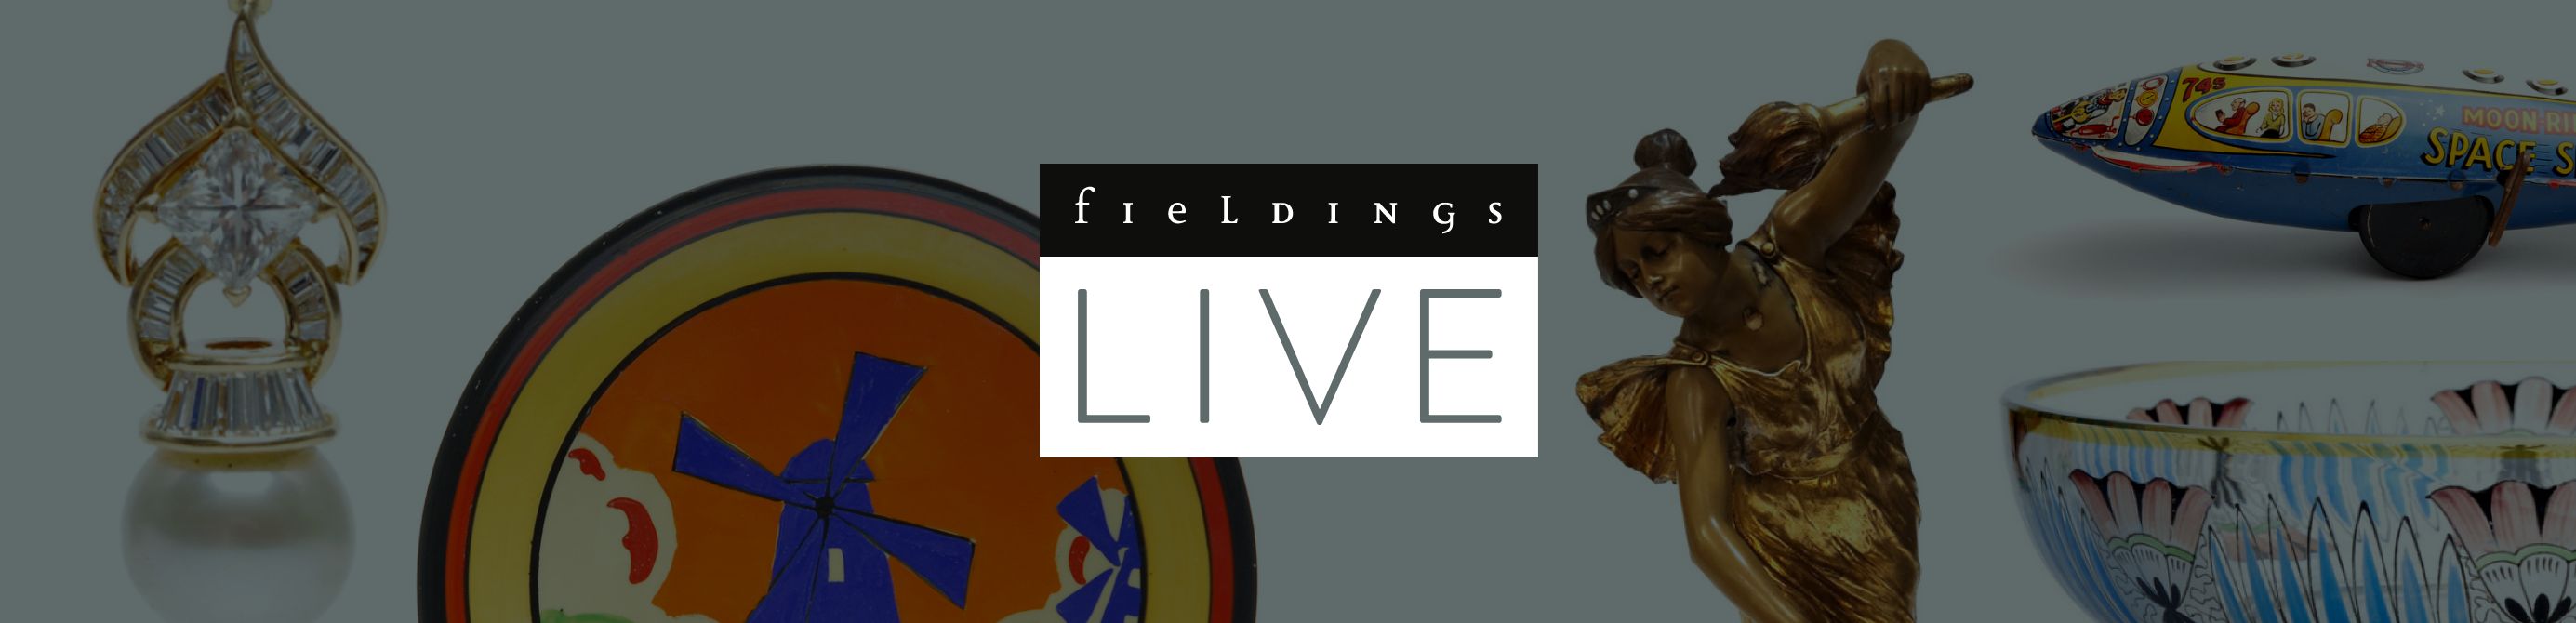 Fieldings Live